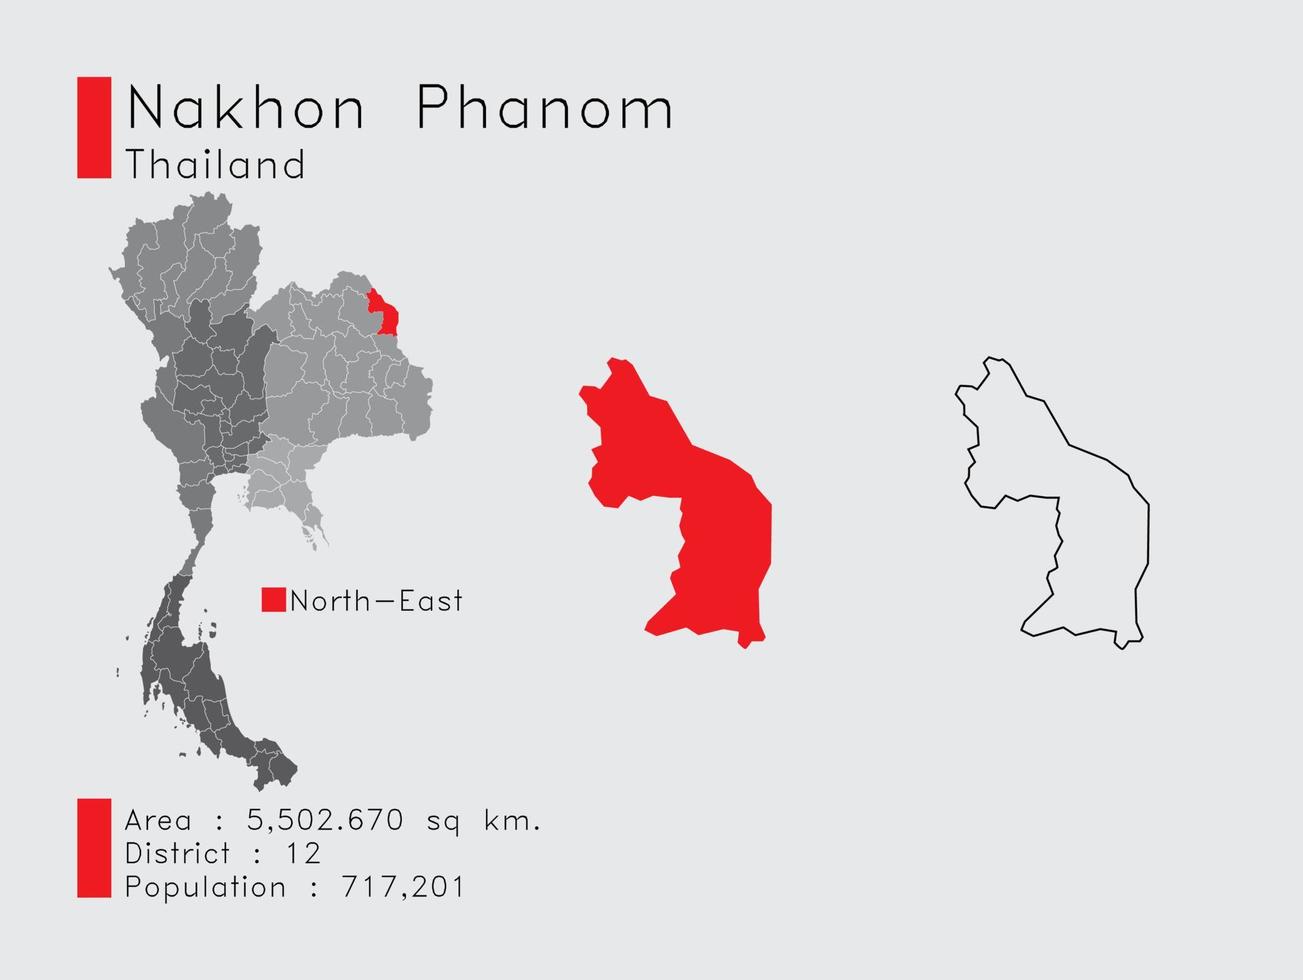 nakhon phanom position in thailand eine reihe von infografikelementen für die provinz. und Bereich Bezirk Bevölkerung und Gliederung. Vektor mit grauem Hintergrund.